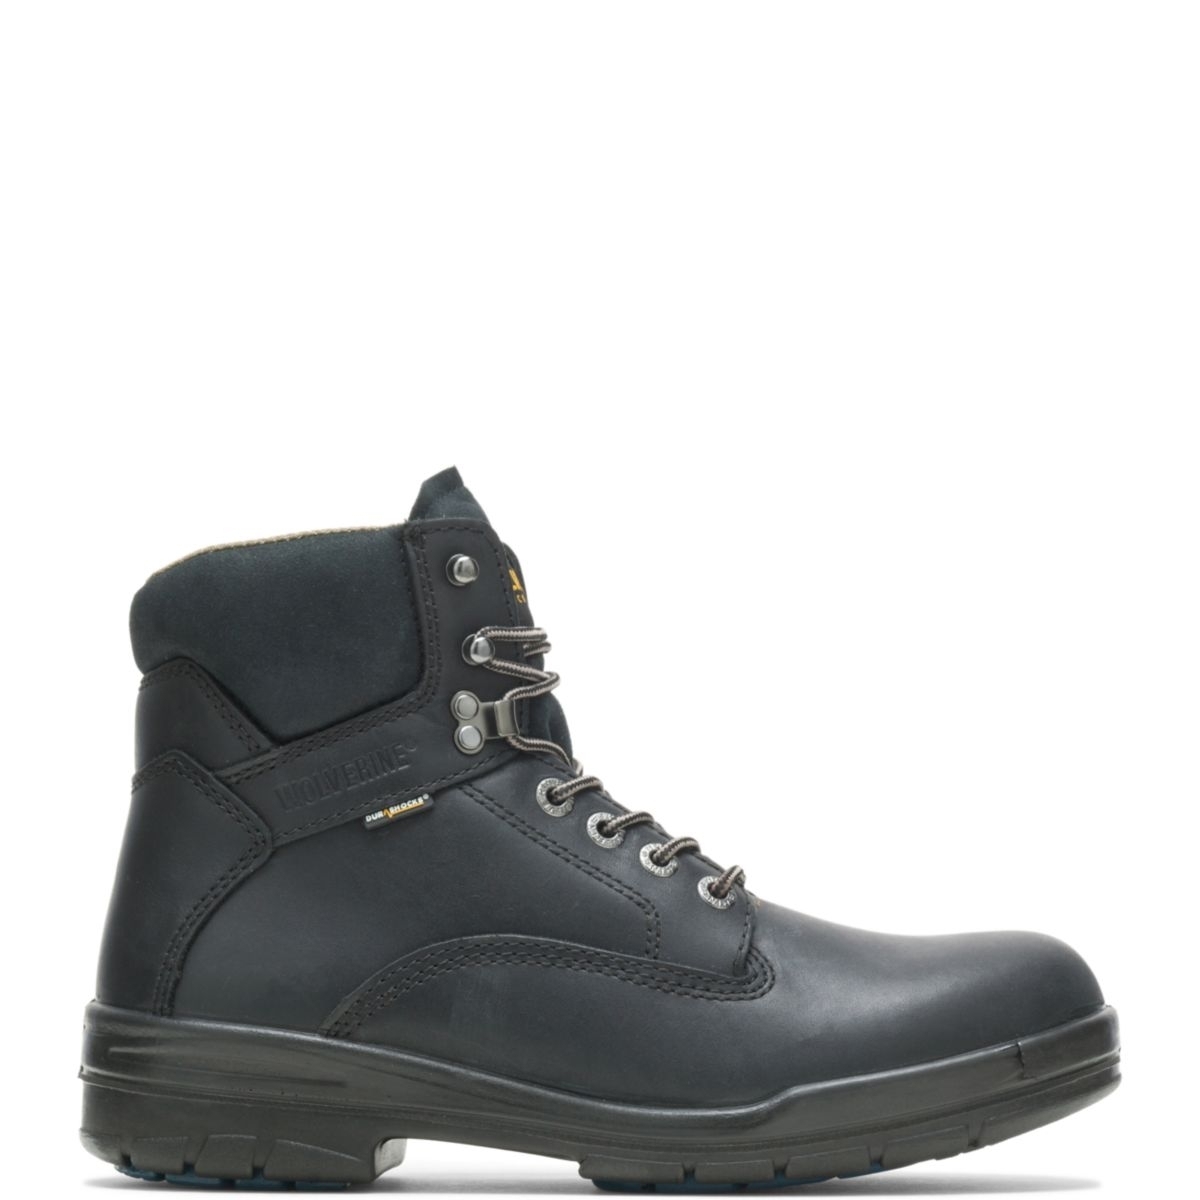 WOLVERINE Men's 6 DuraShocksÂ® Slip Resistant Direct-Attached Lined Soft Toe Work Boot Black - W03123 14 WIDE BLACK - BLACK, 9.5